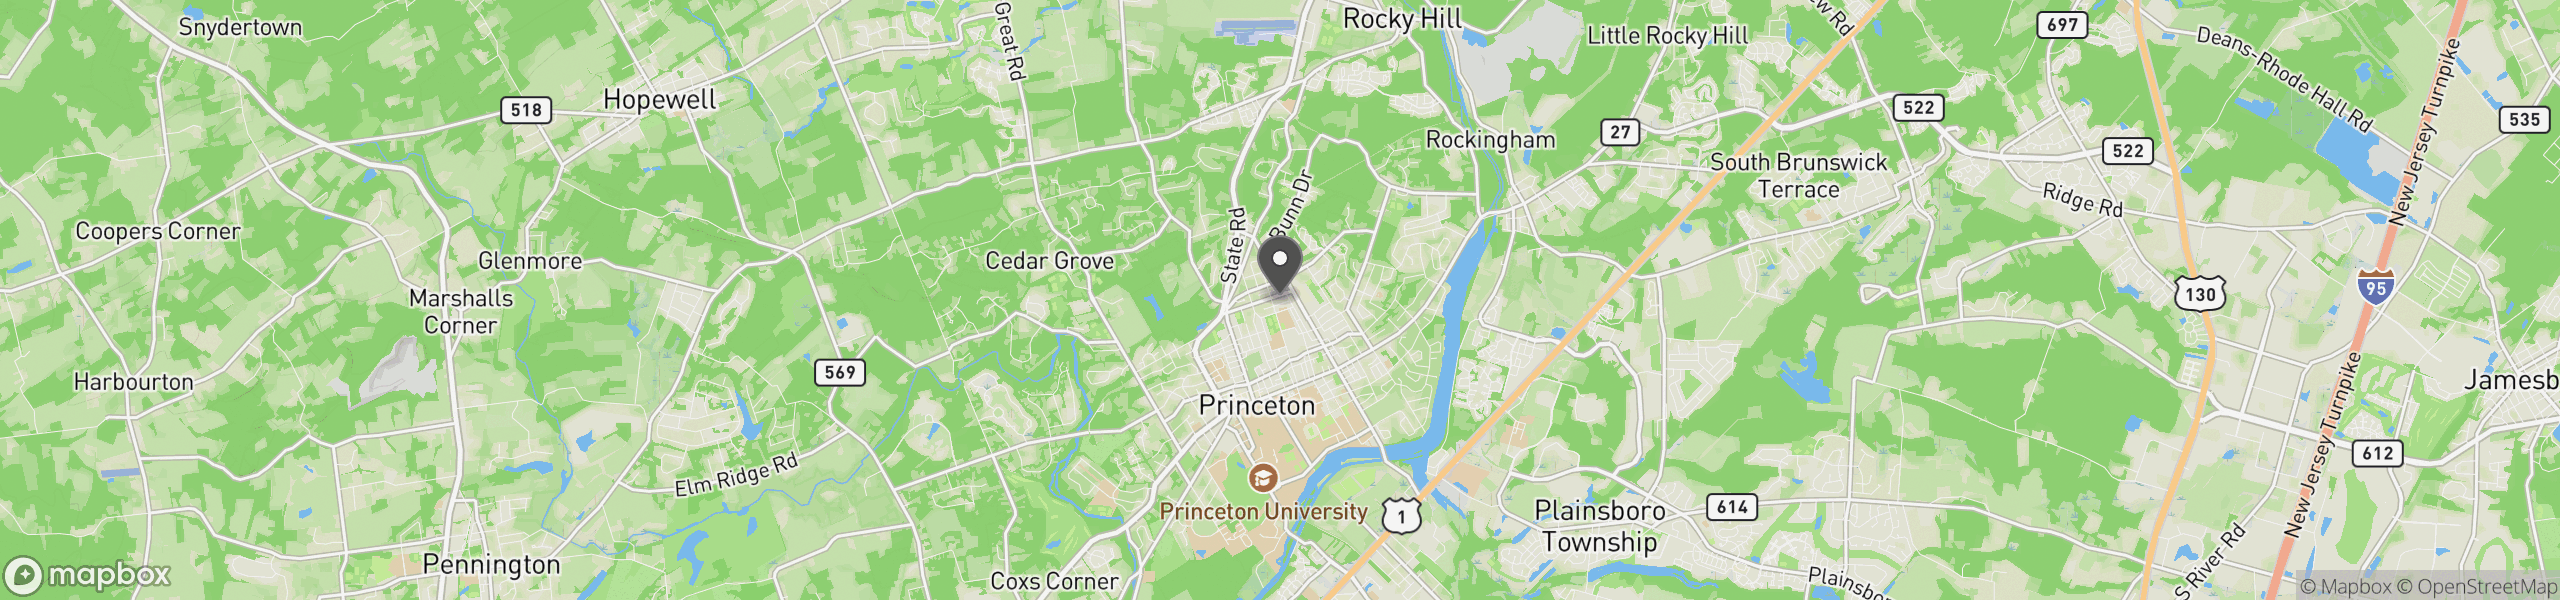 Princeton, NJ 08540